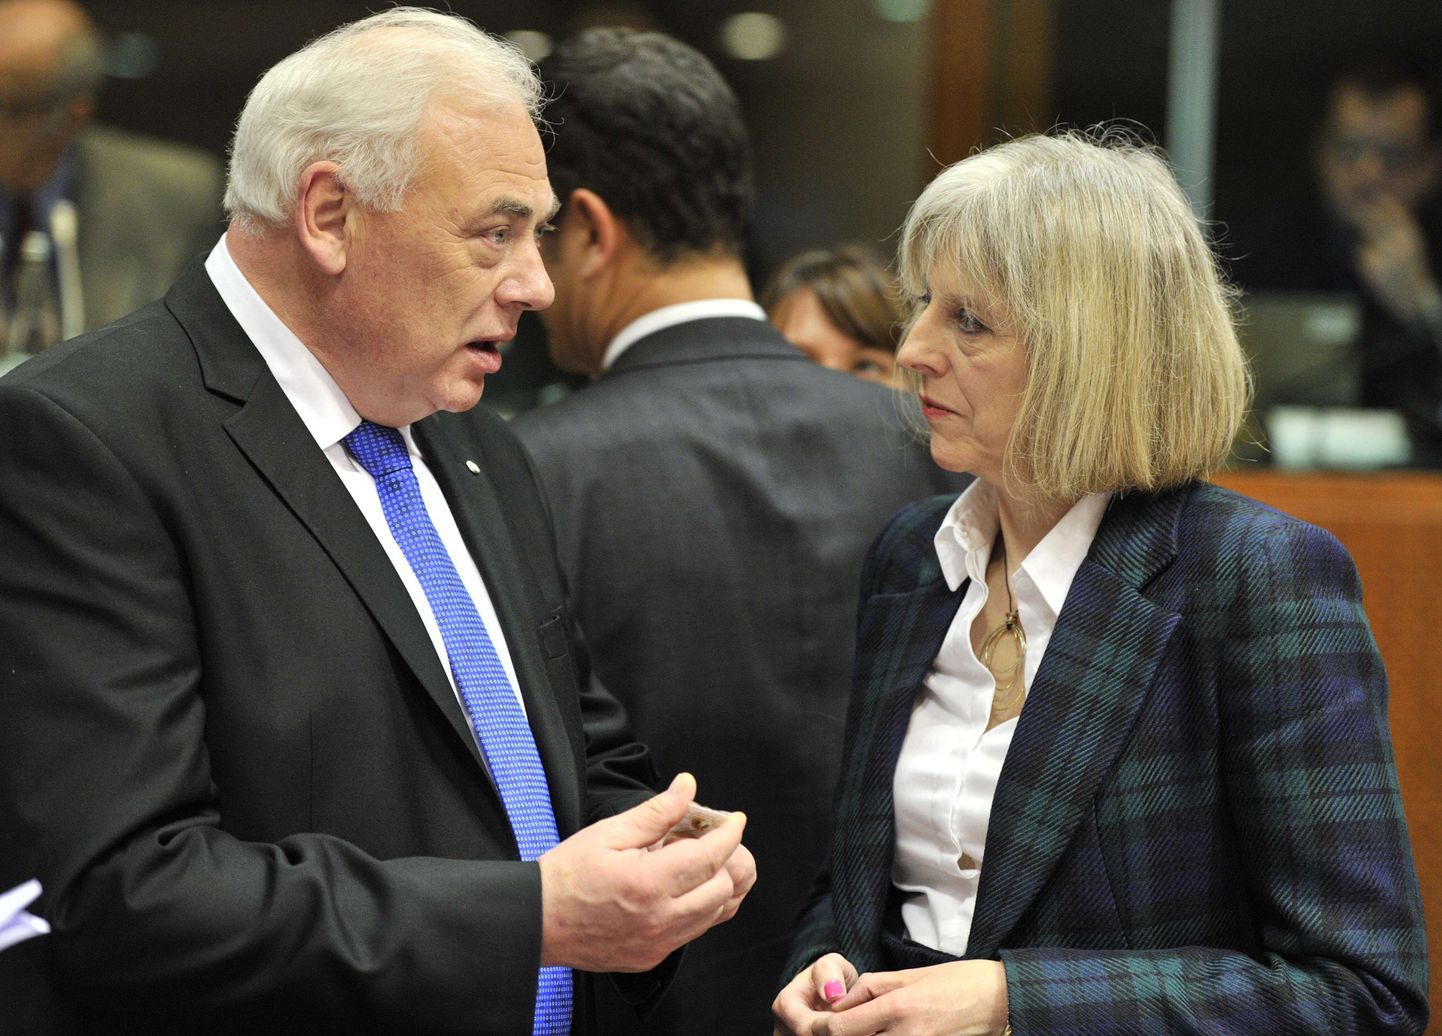 Leedu siseminister Dailis Alfonsas Barakauskas vestlemas Briti siseministri Theresa Mayga.